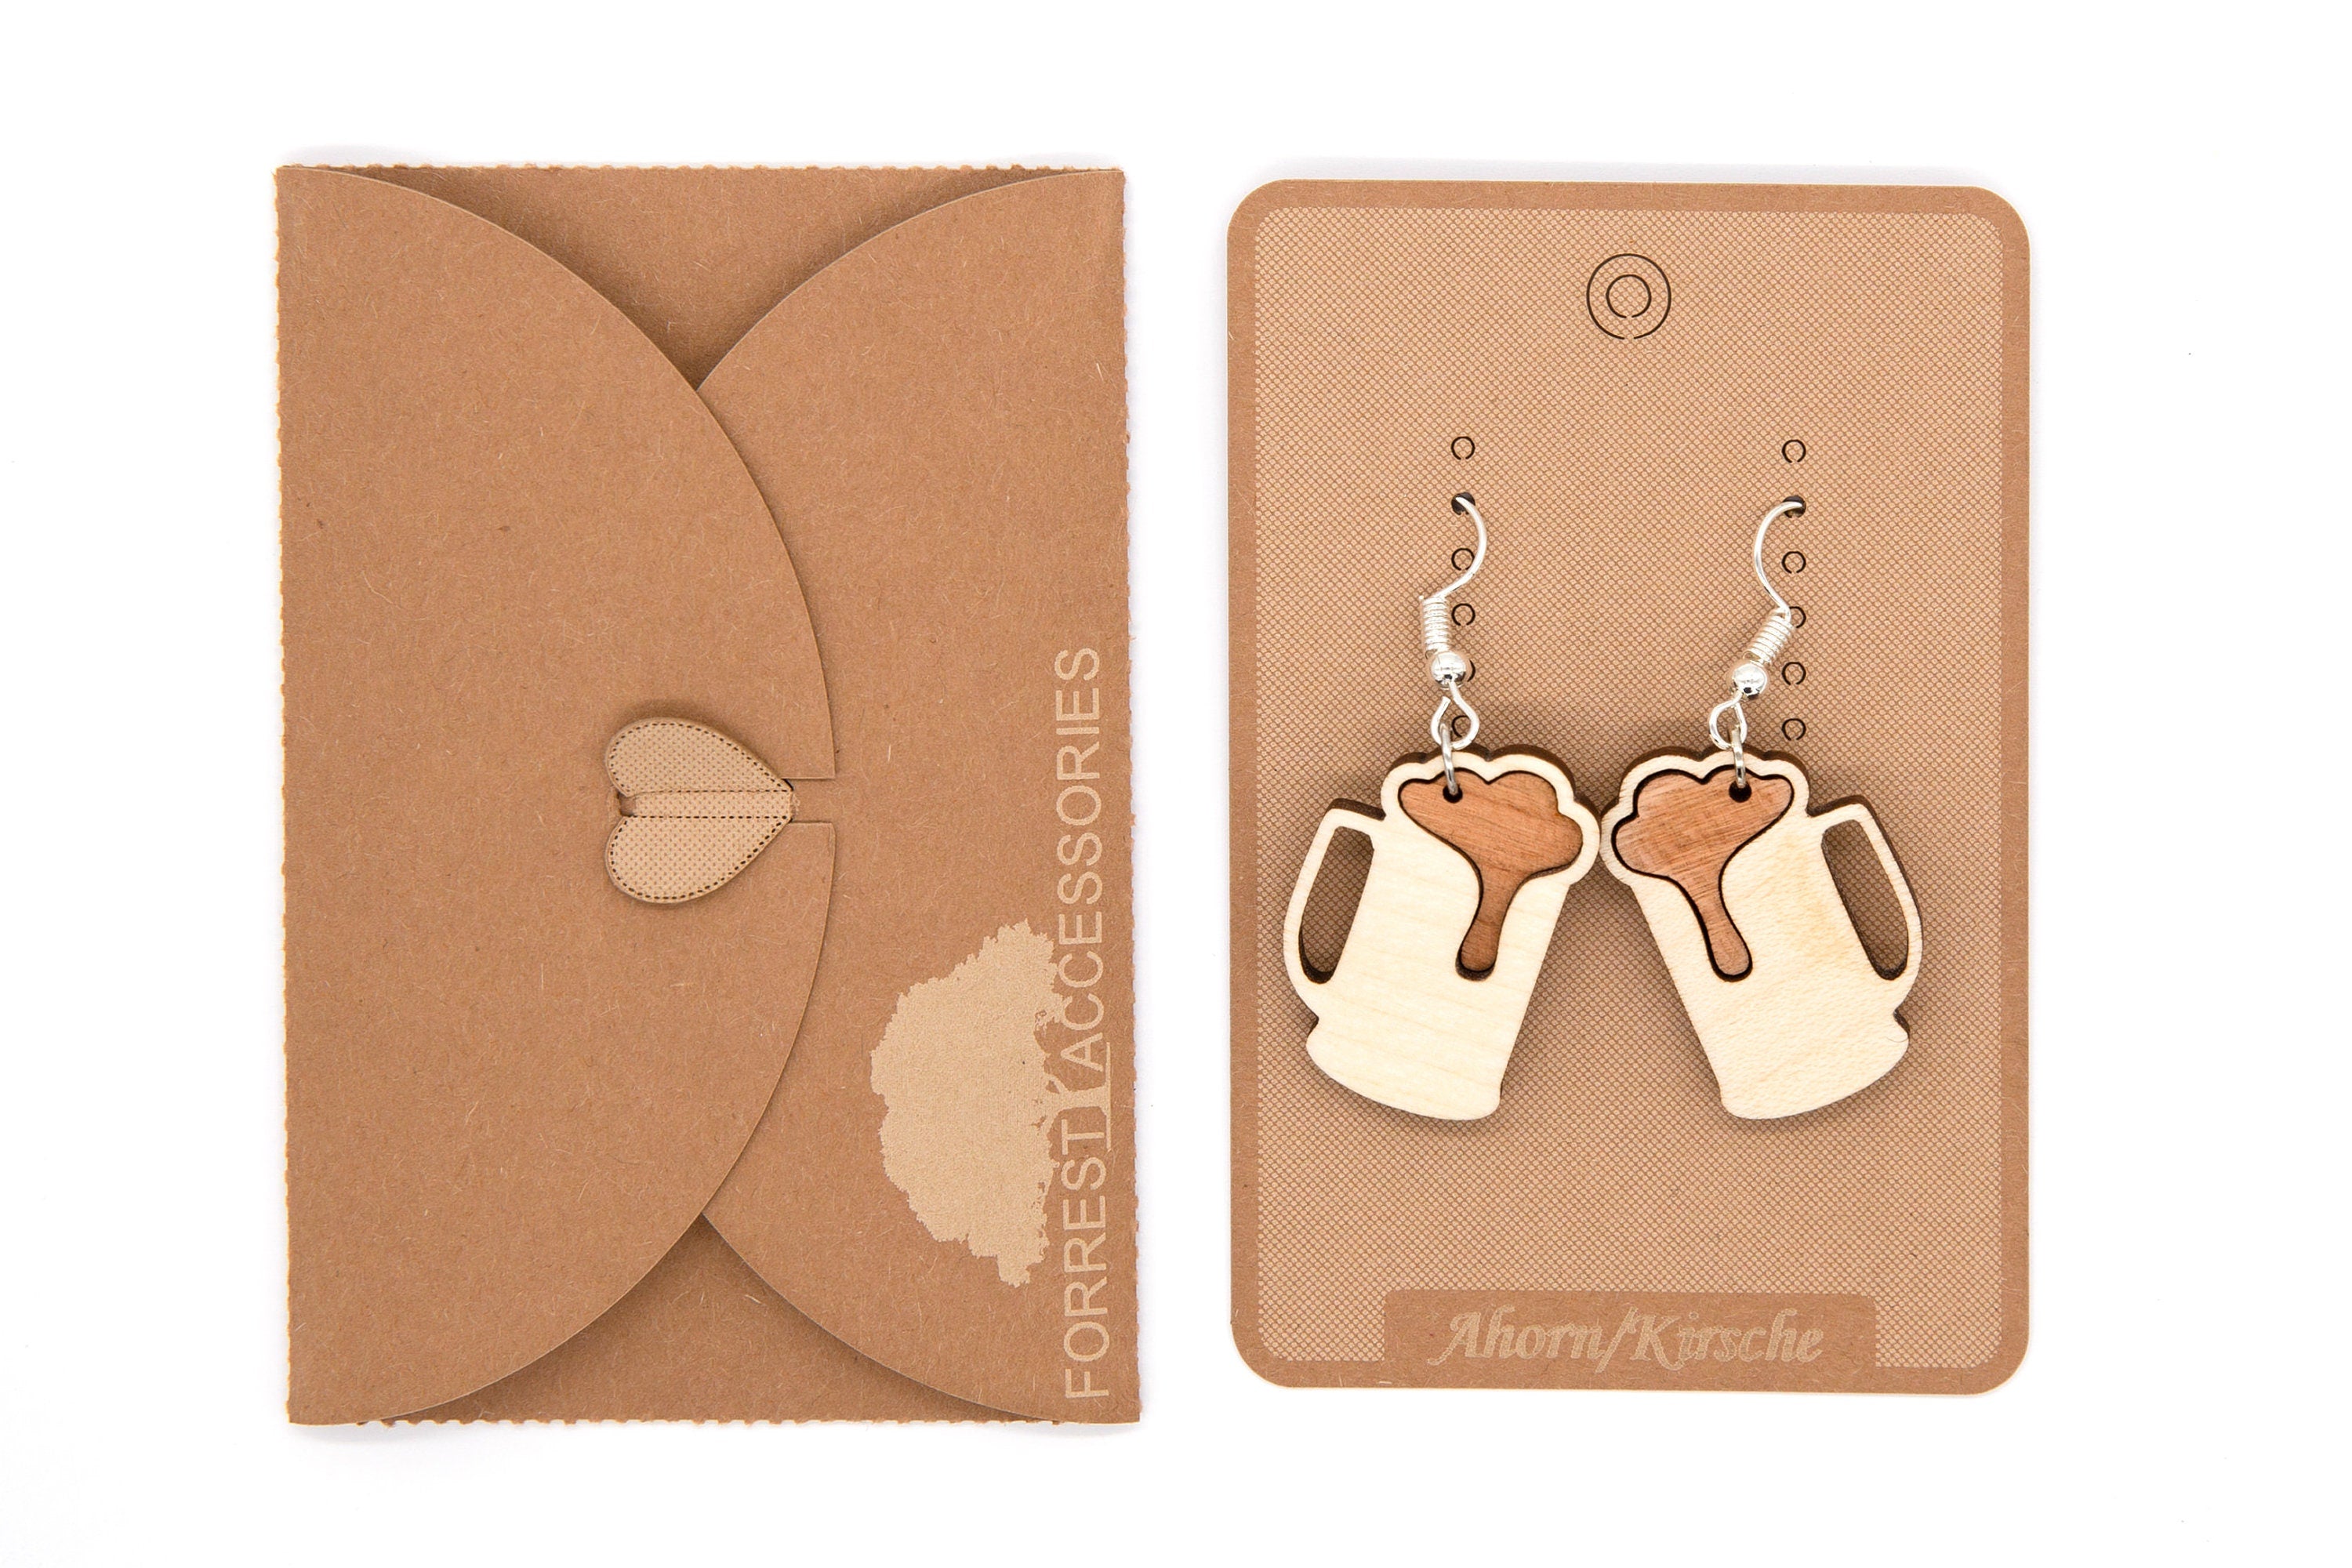 Holz Ohrhänger Maßkrug - Ohrringe aus Holz - Holzschmuck - Mode Schmuck